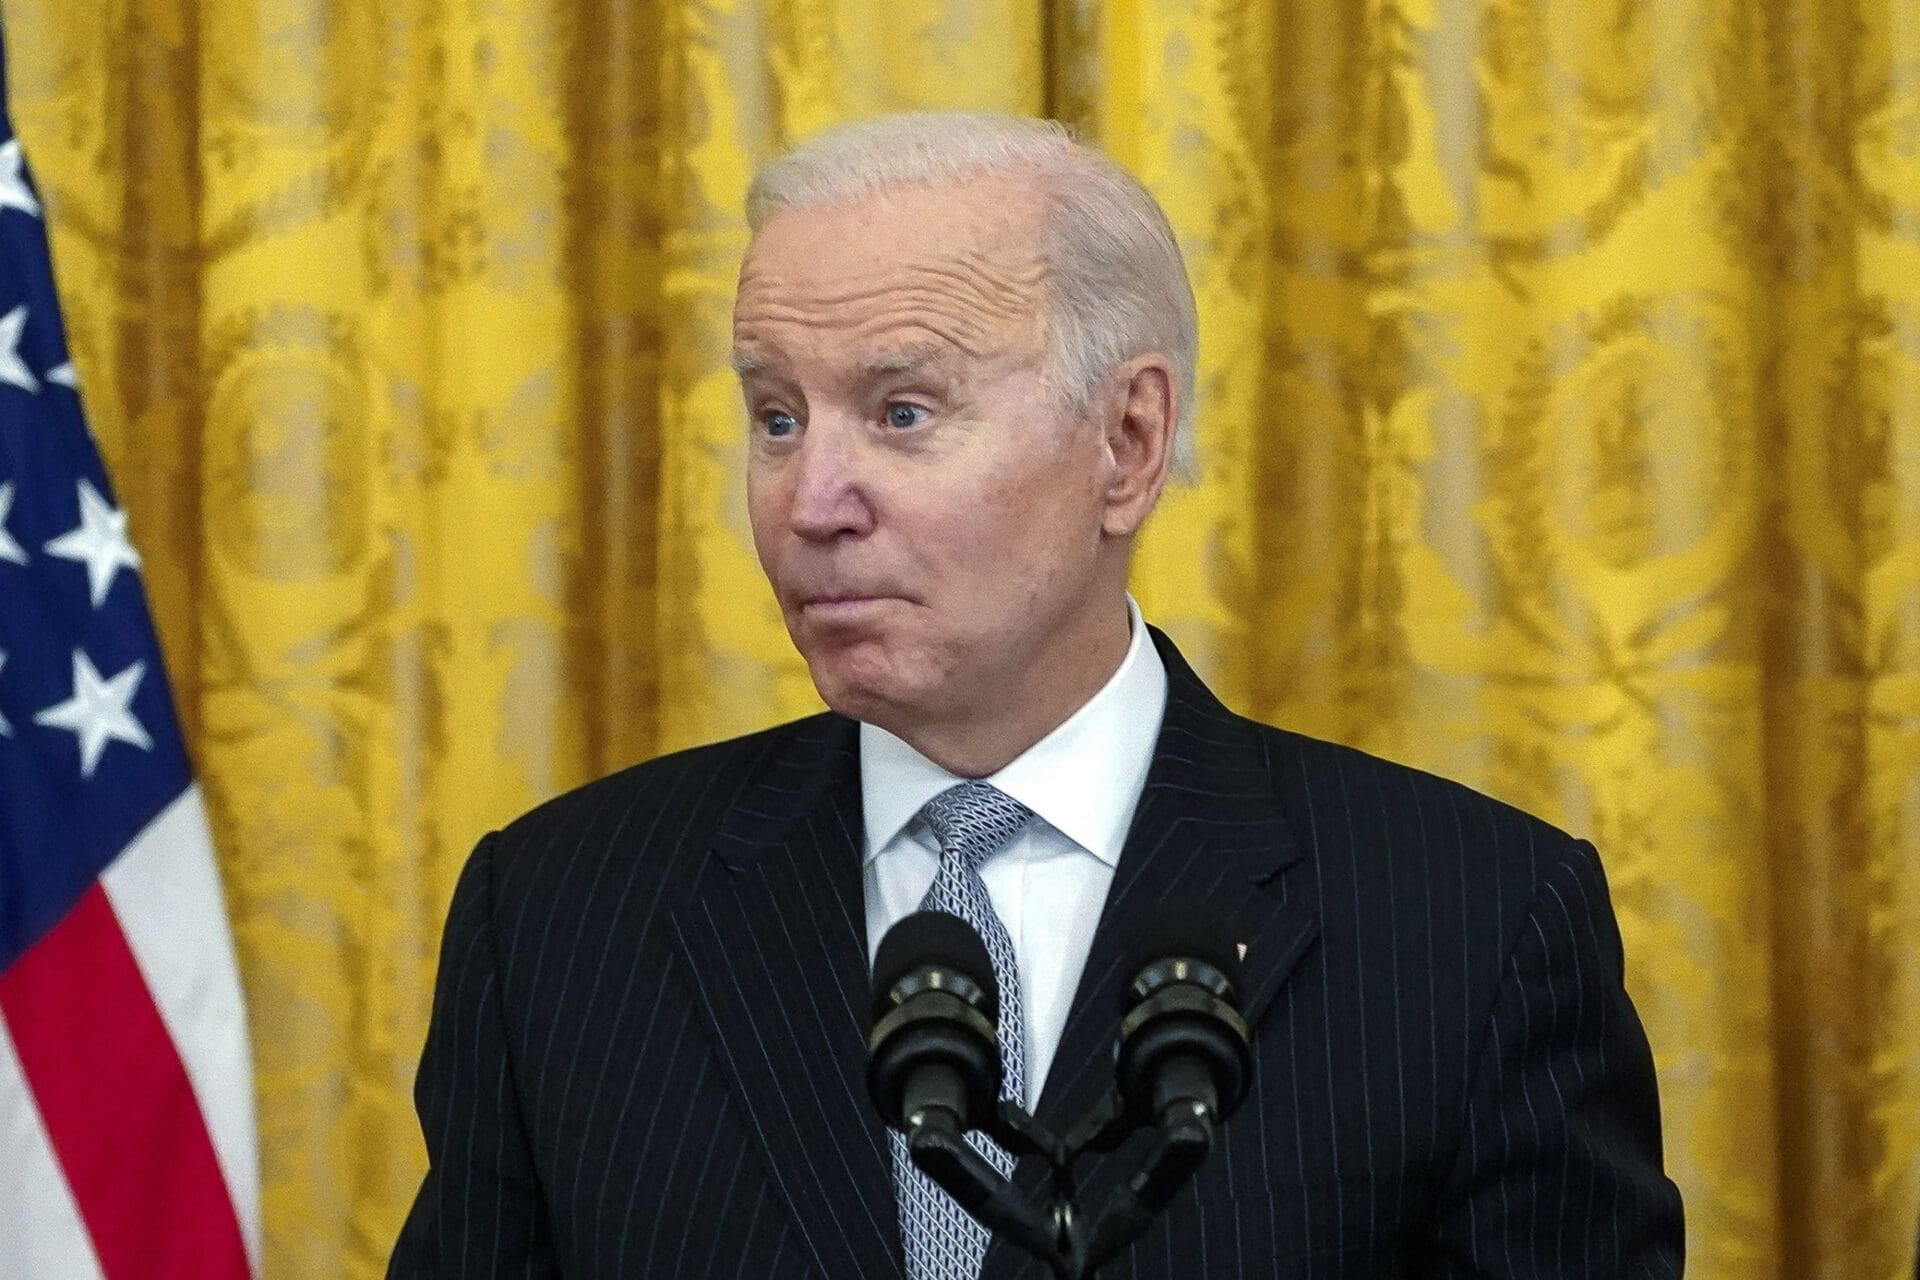 Joe Biden surprised confused